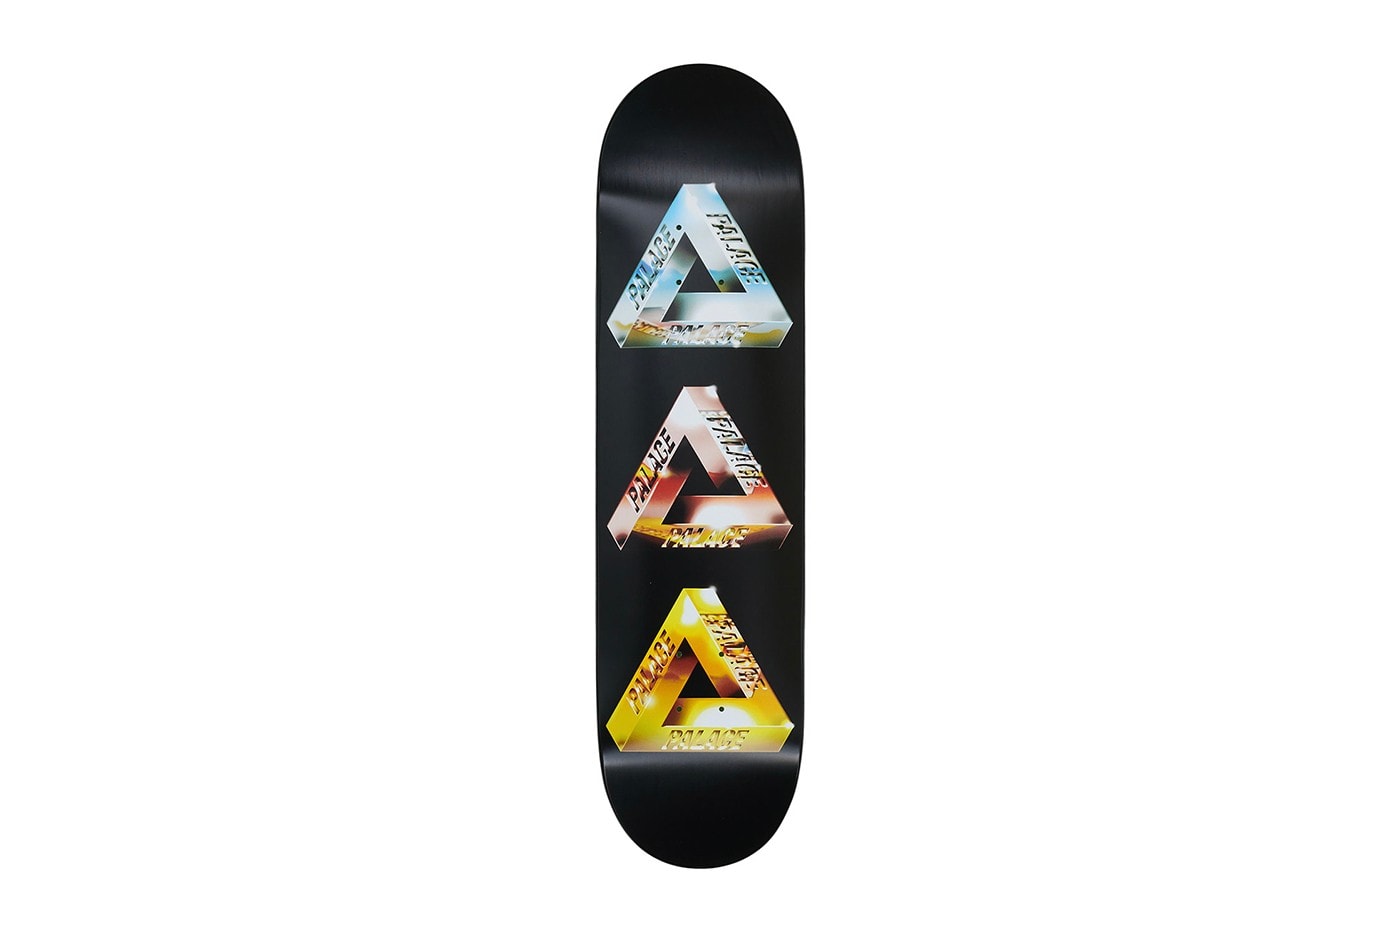 Palace Skateboards 2021 夏季配件系列